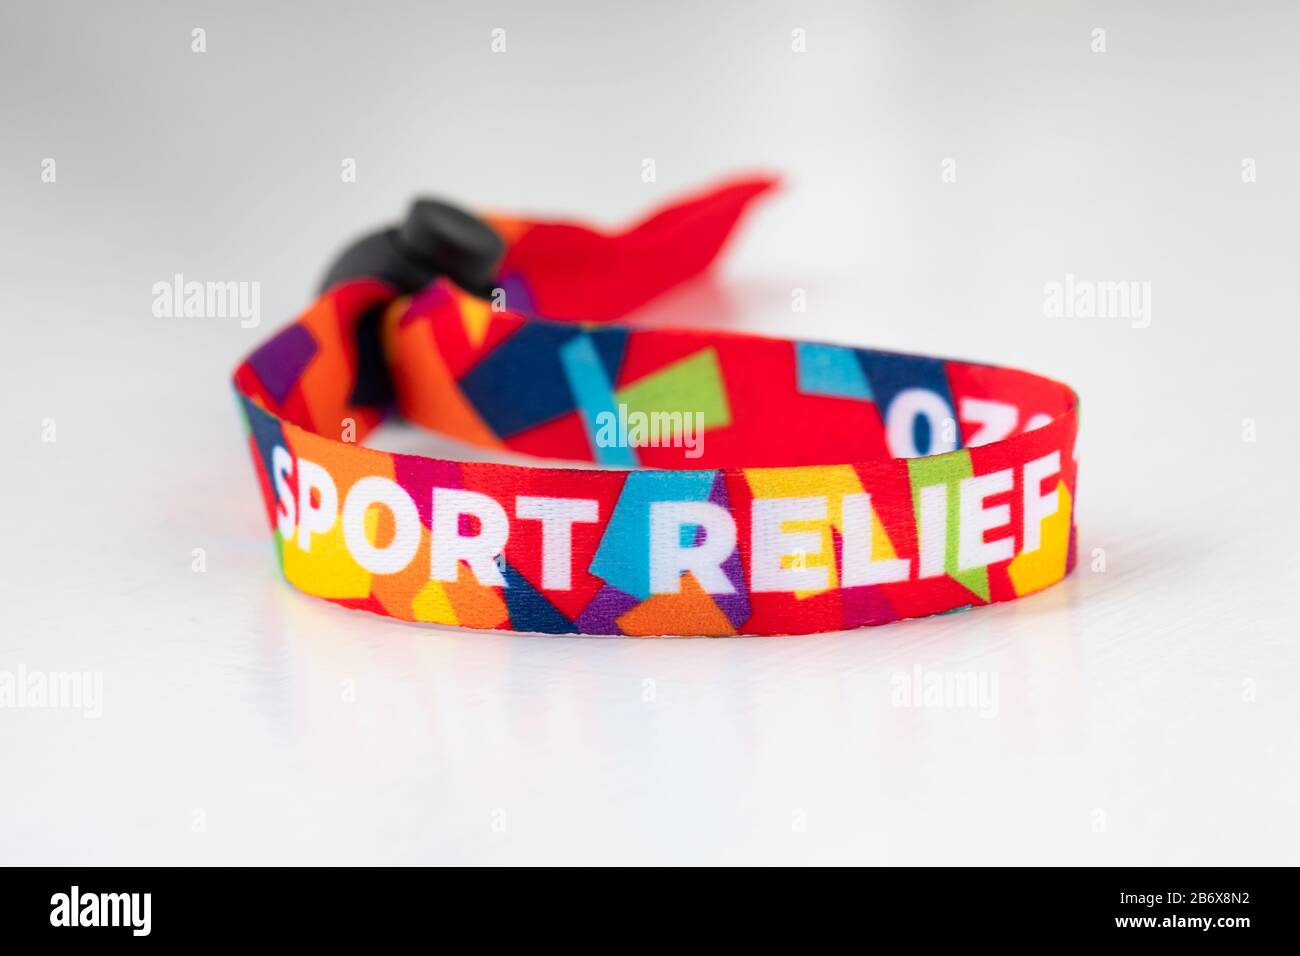 Bracelet sport relief 2020 Banque D'Images